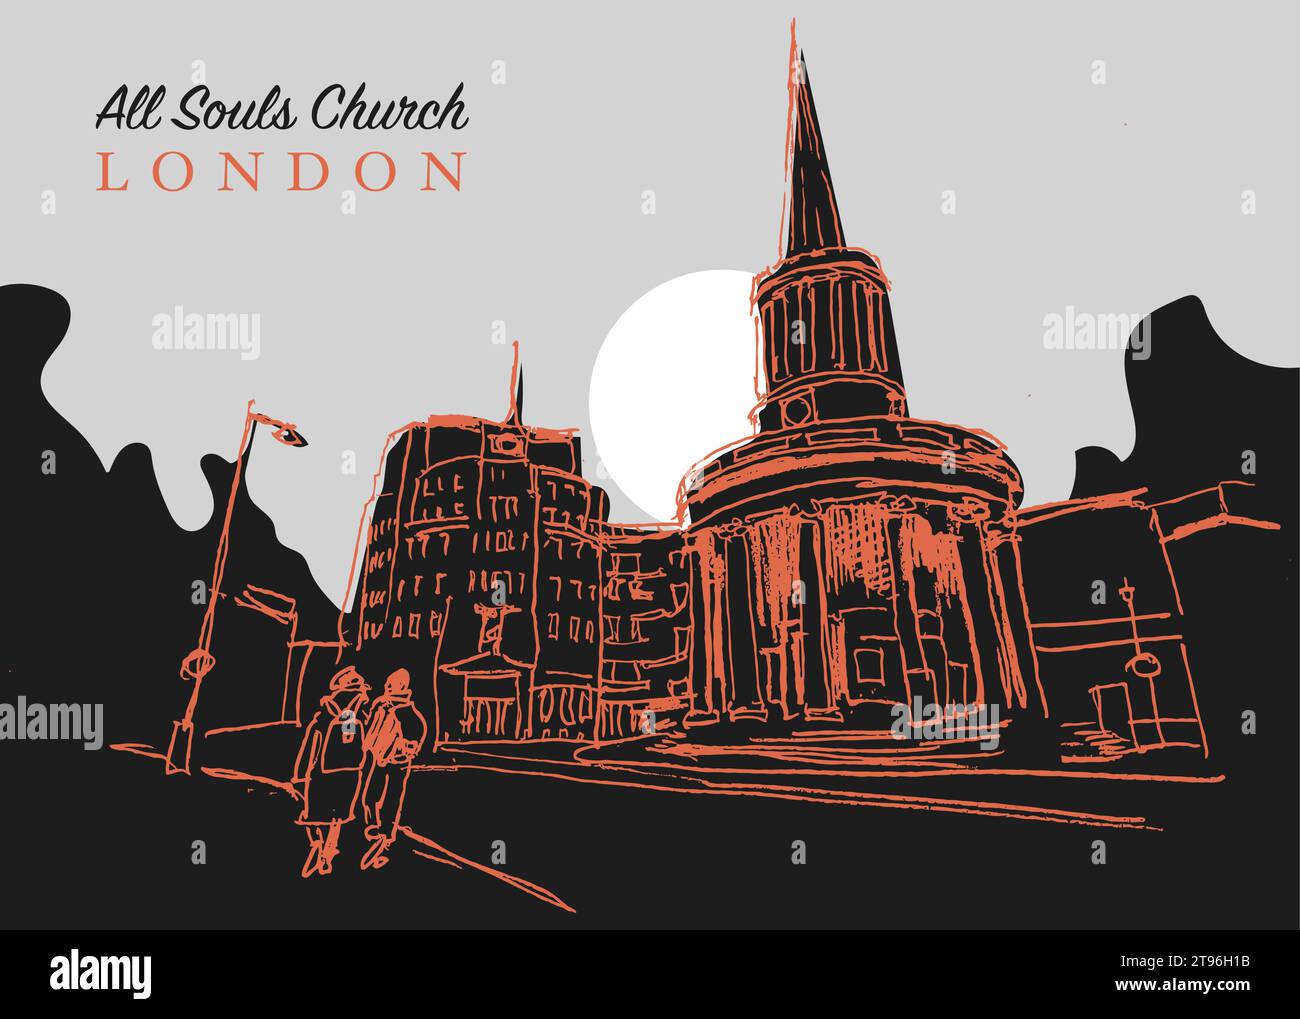 Vector Hand Drawn Sketch Illustration of the All Souls Church ist eine evangelische anglikanische Kirche im Zentrum Londons Stock Vektor